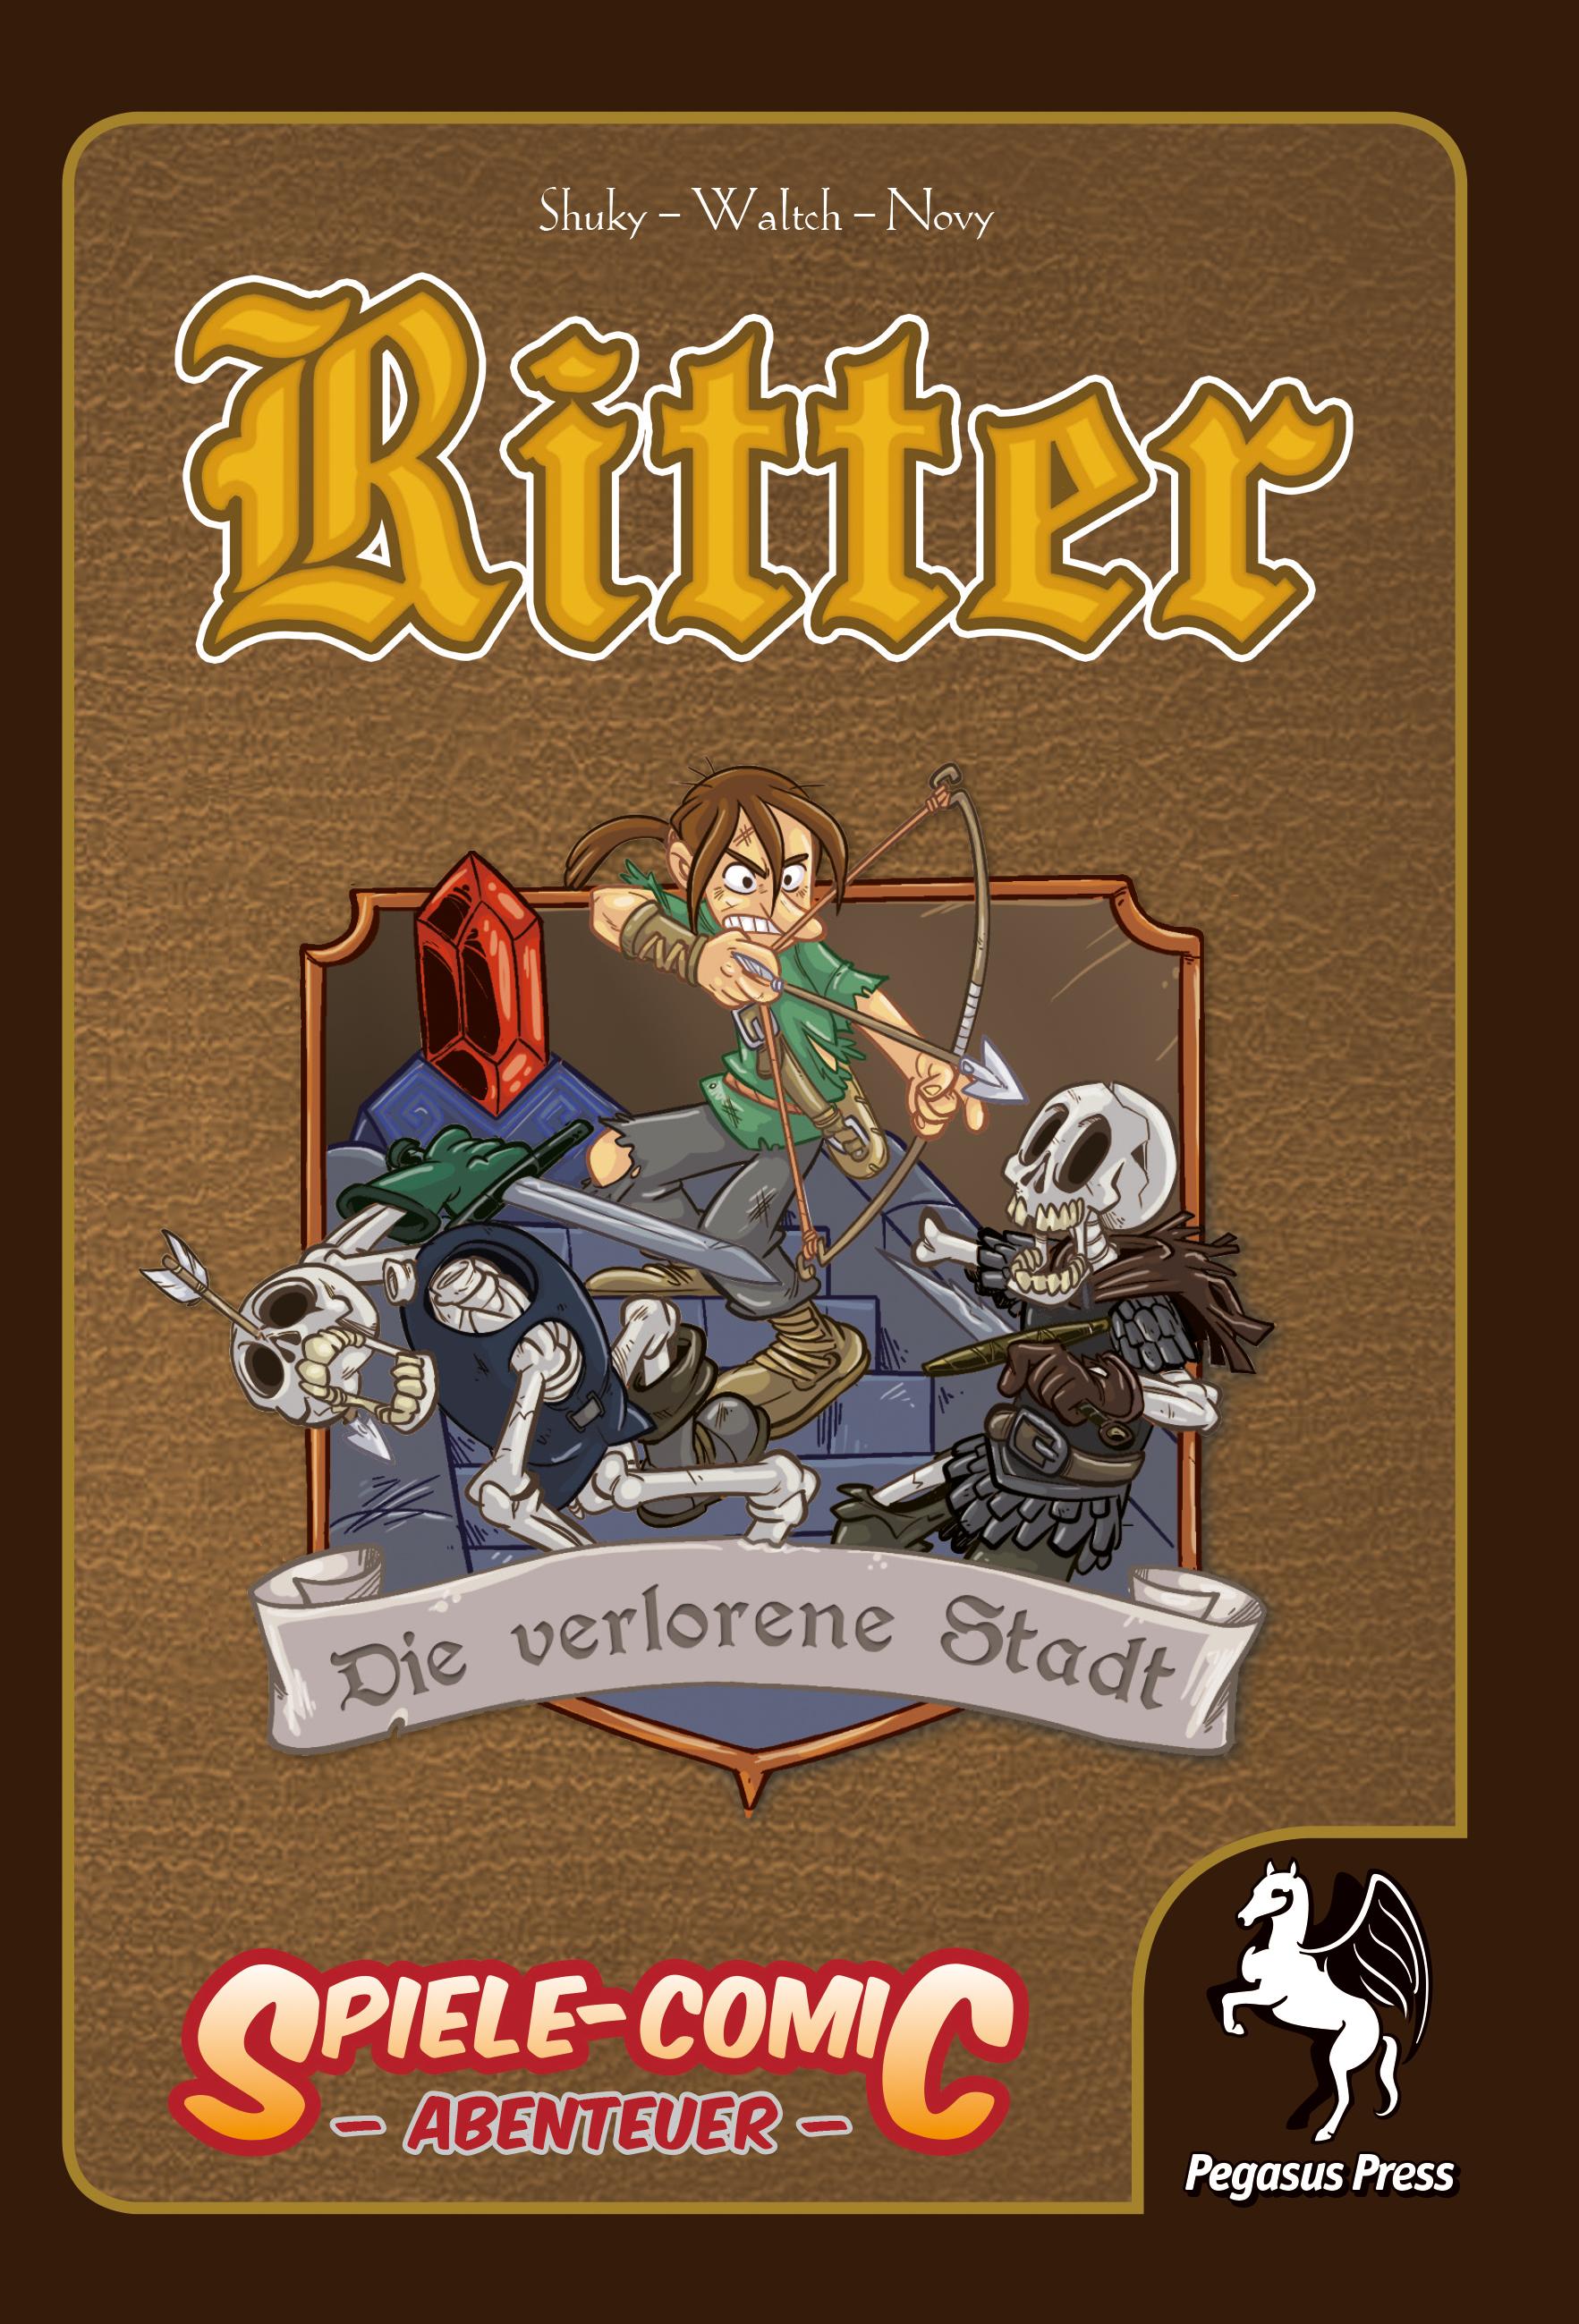 Spiele-Comic: Abenteuer - Ritter #3: Die verlorene Stadt